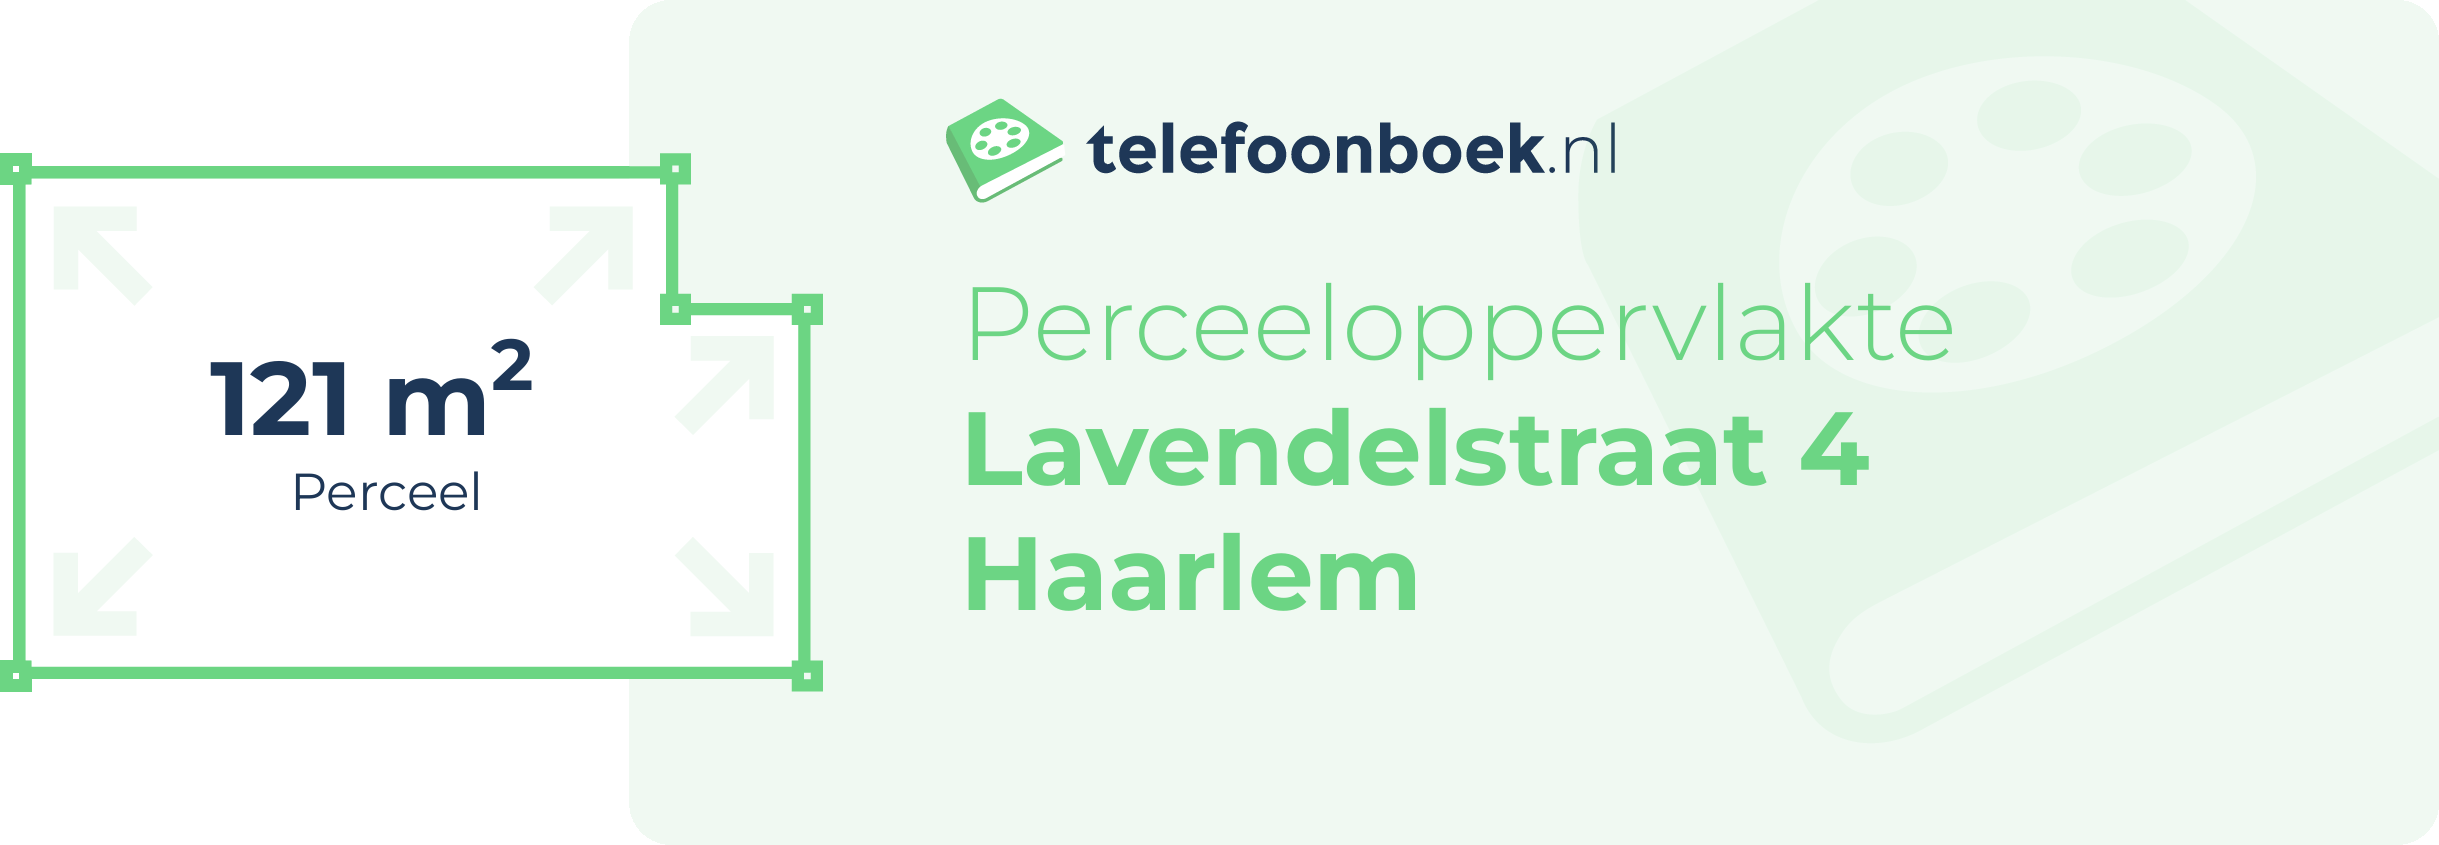 Perceeloppervlakte Lavendelstraat 4 Haarlem